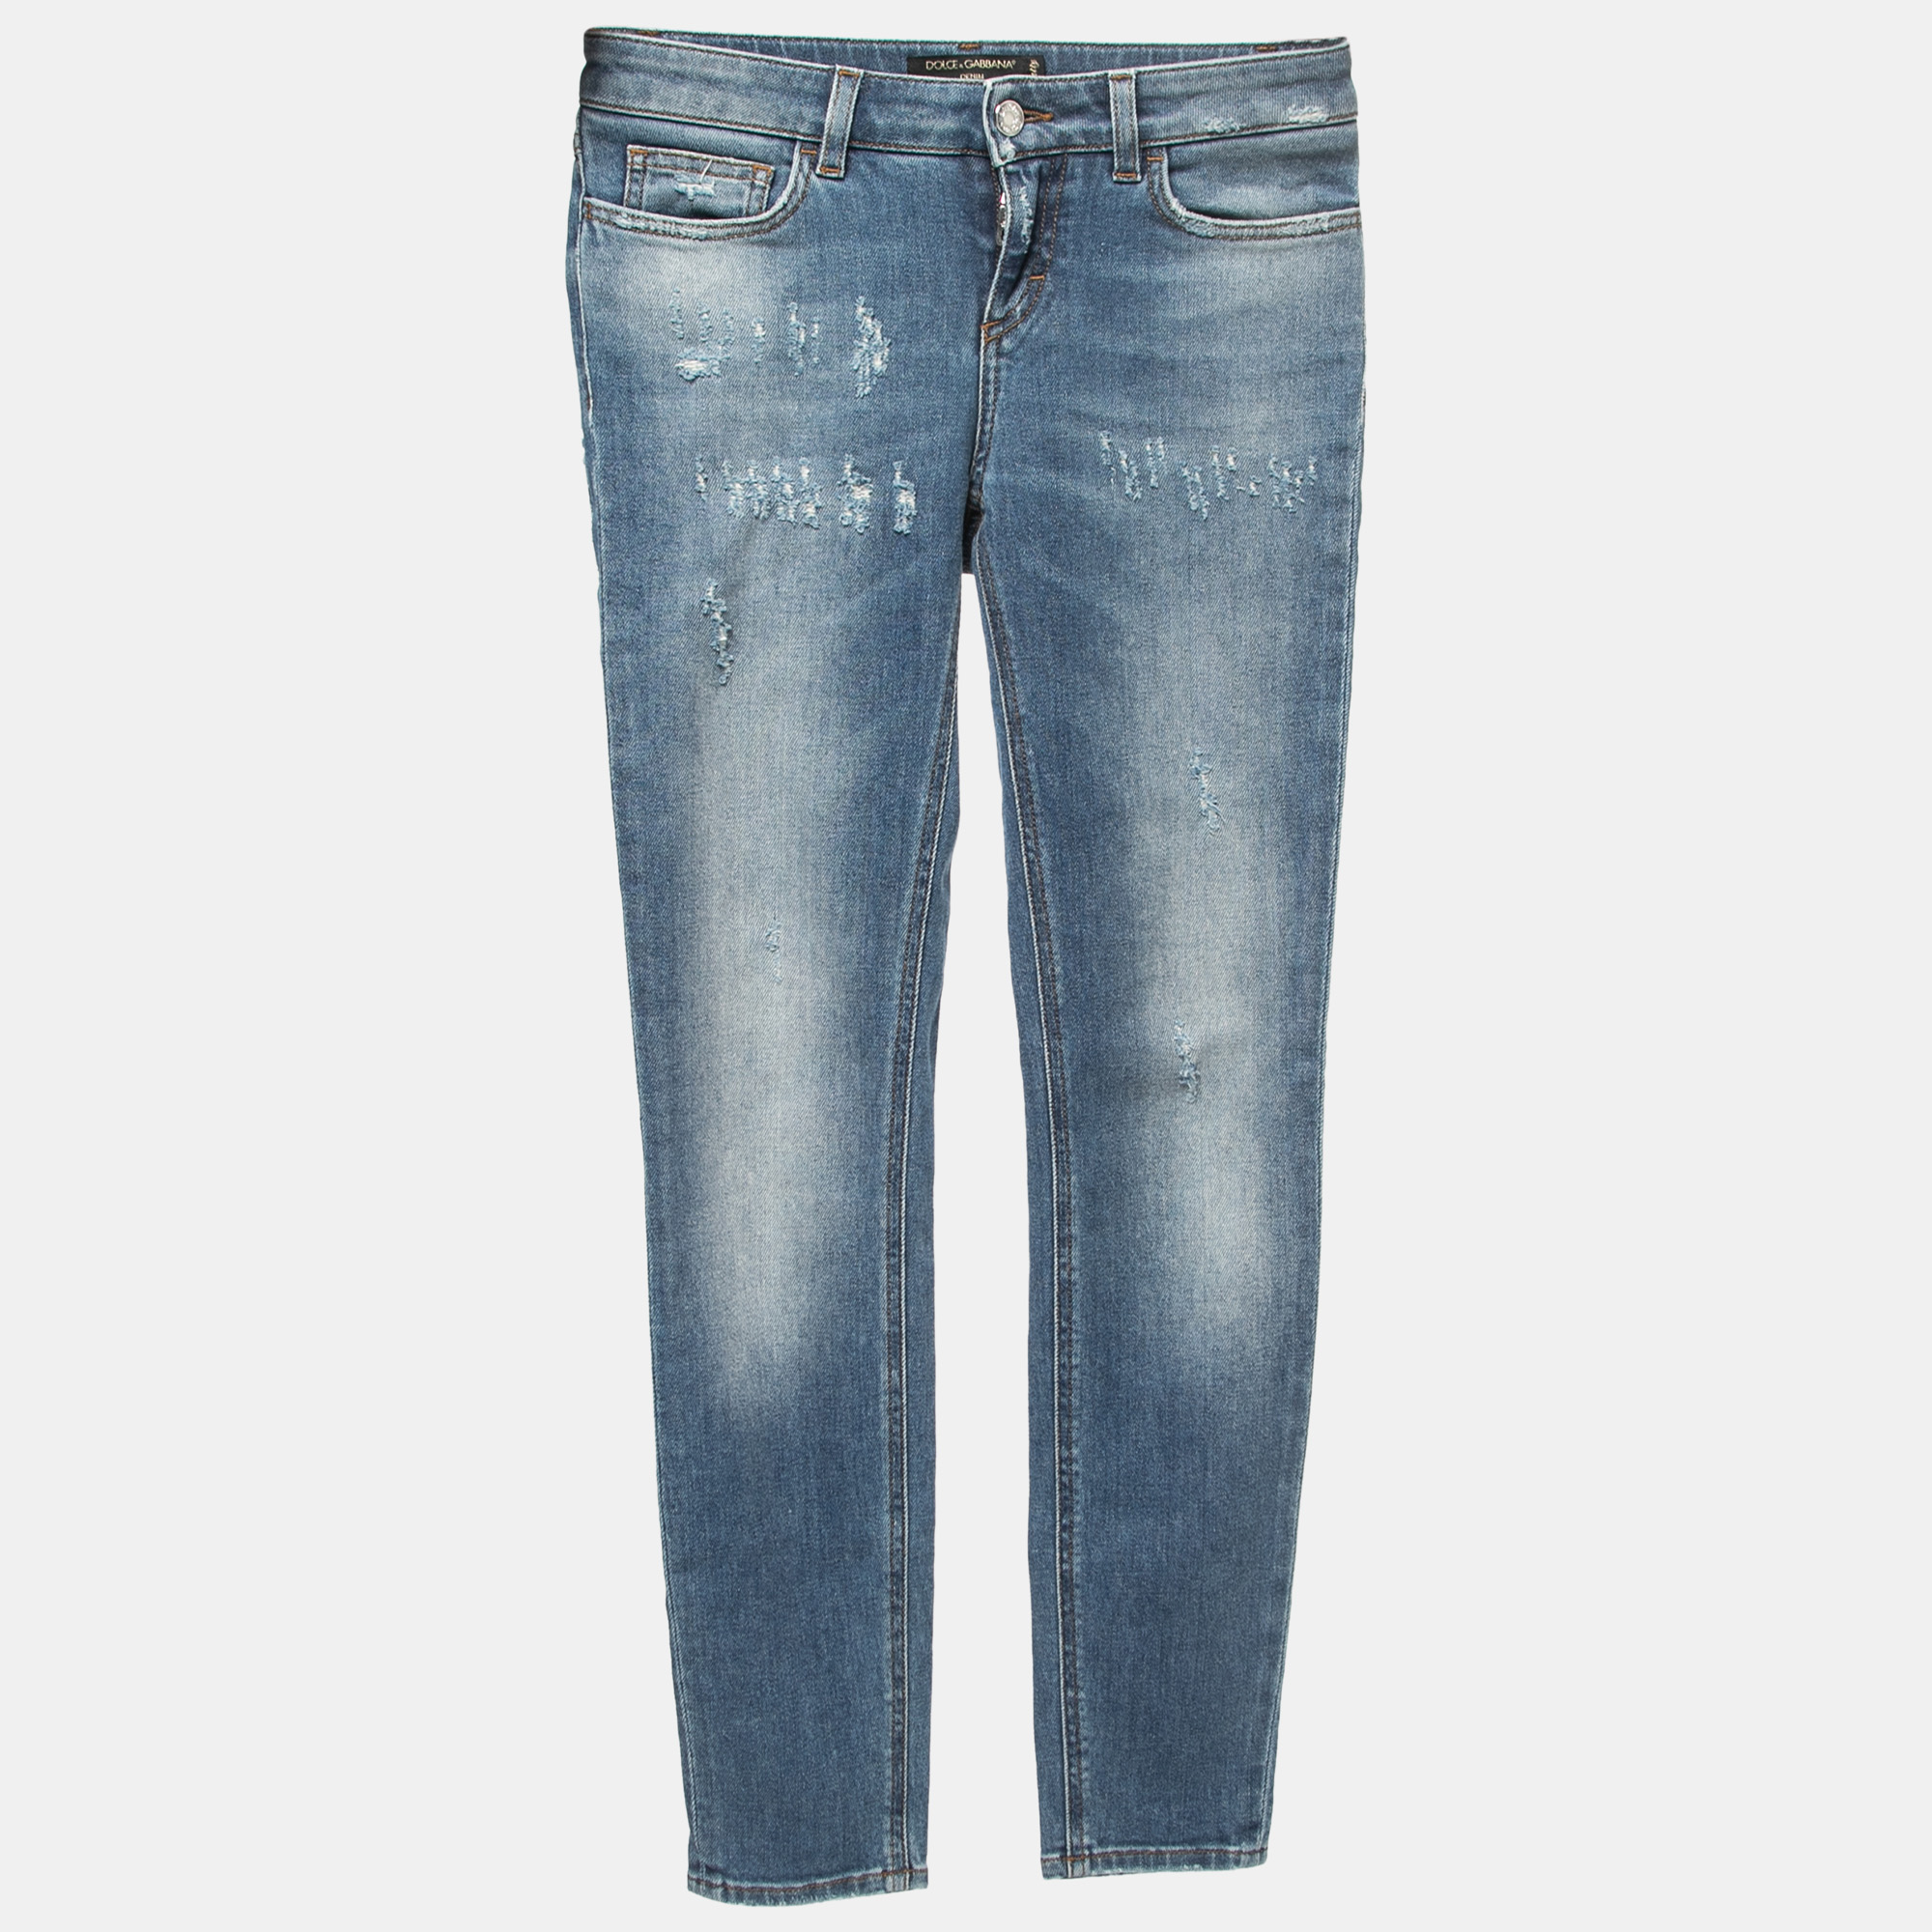 

Dolce & Gabbana Blue Distressed Denim Pretty Skinny Jeans  Waist 26